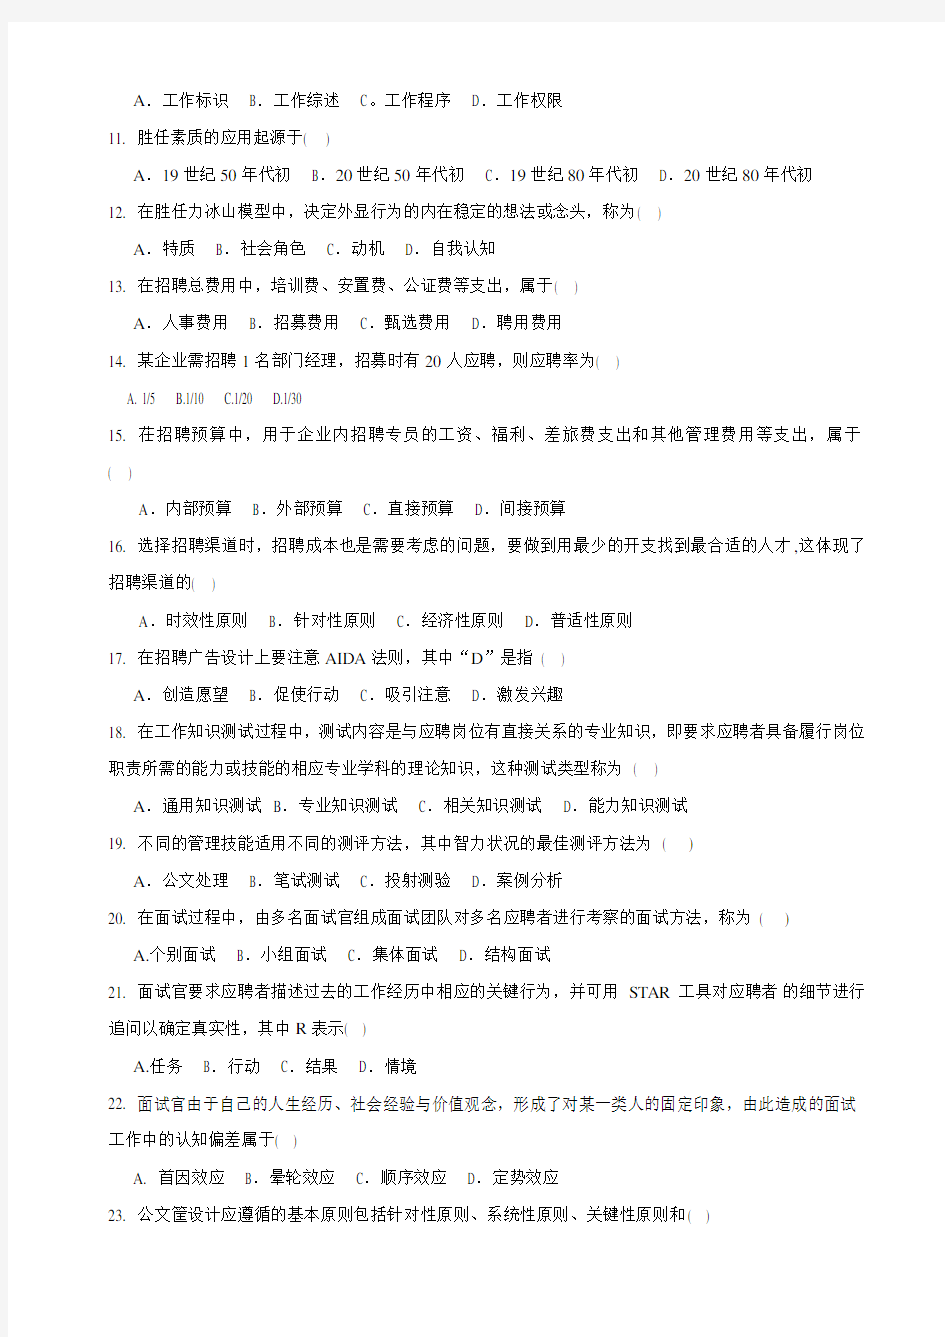 2013年4月江苏省高等教育自学考试05962 招聘管理 试卷